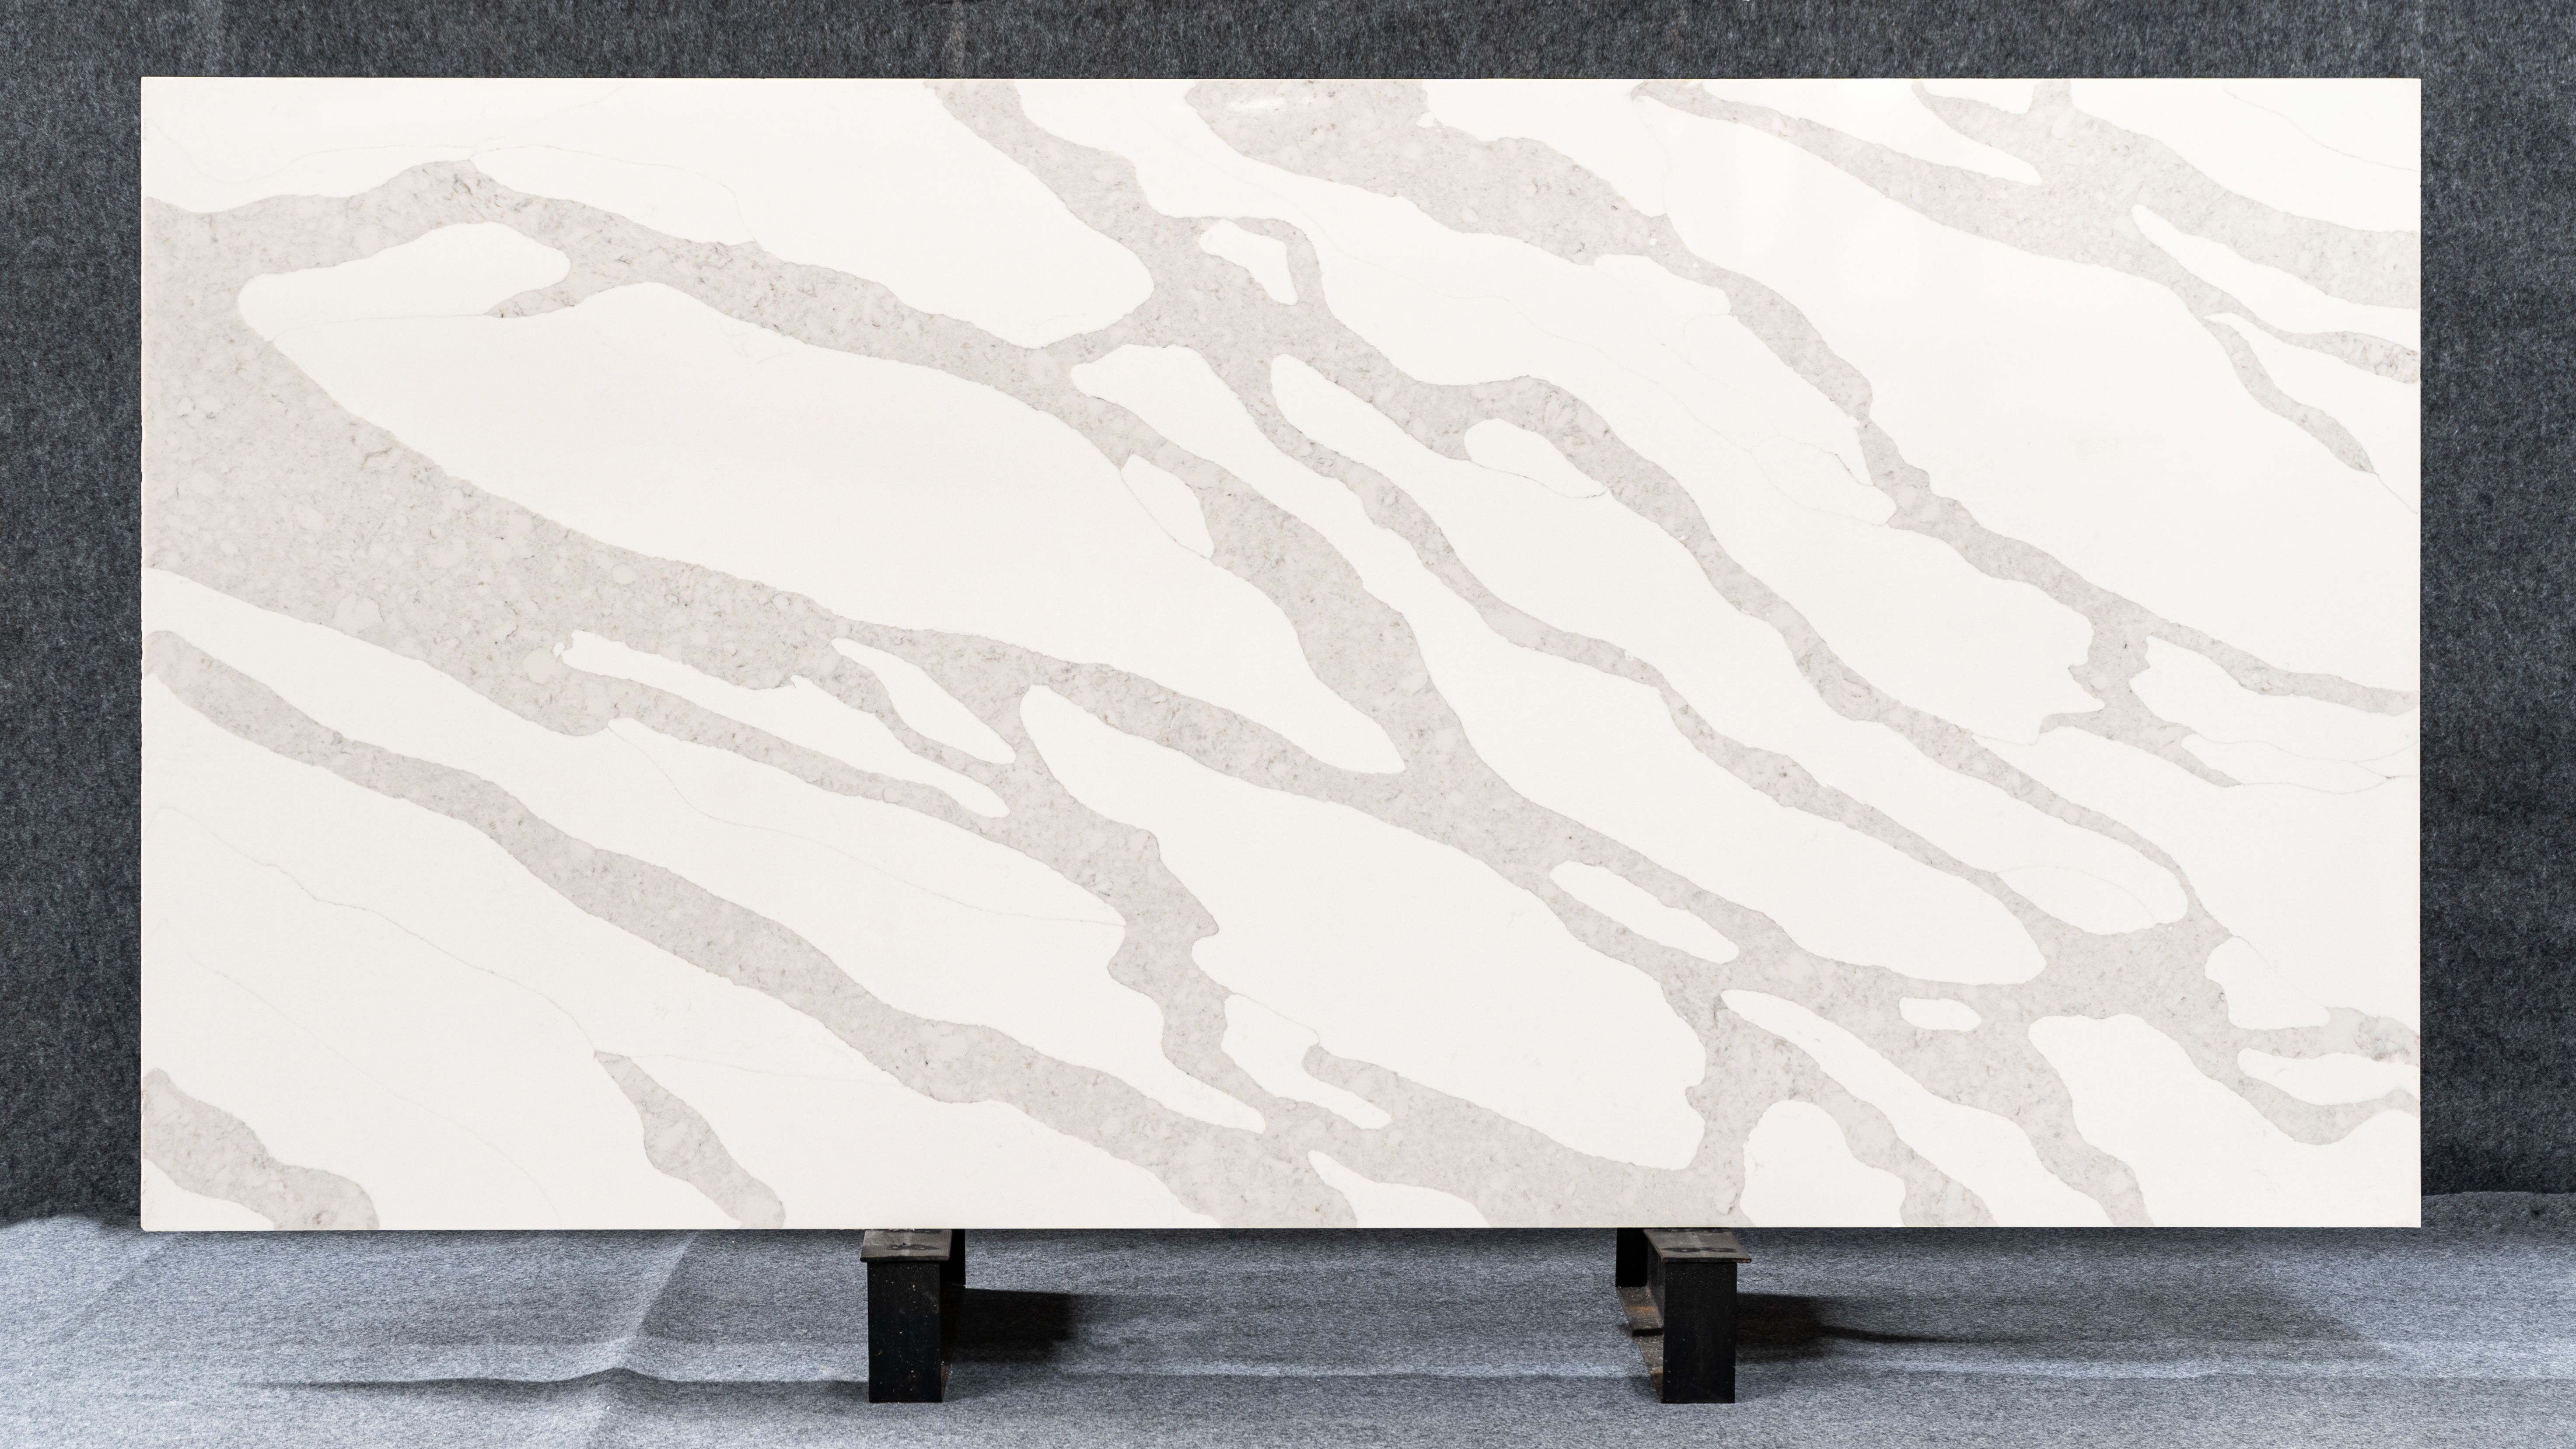 White Quartz Stone countertops for the kitchen